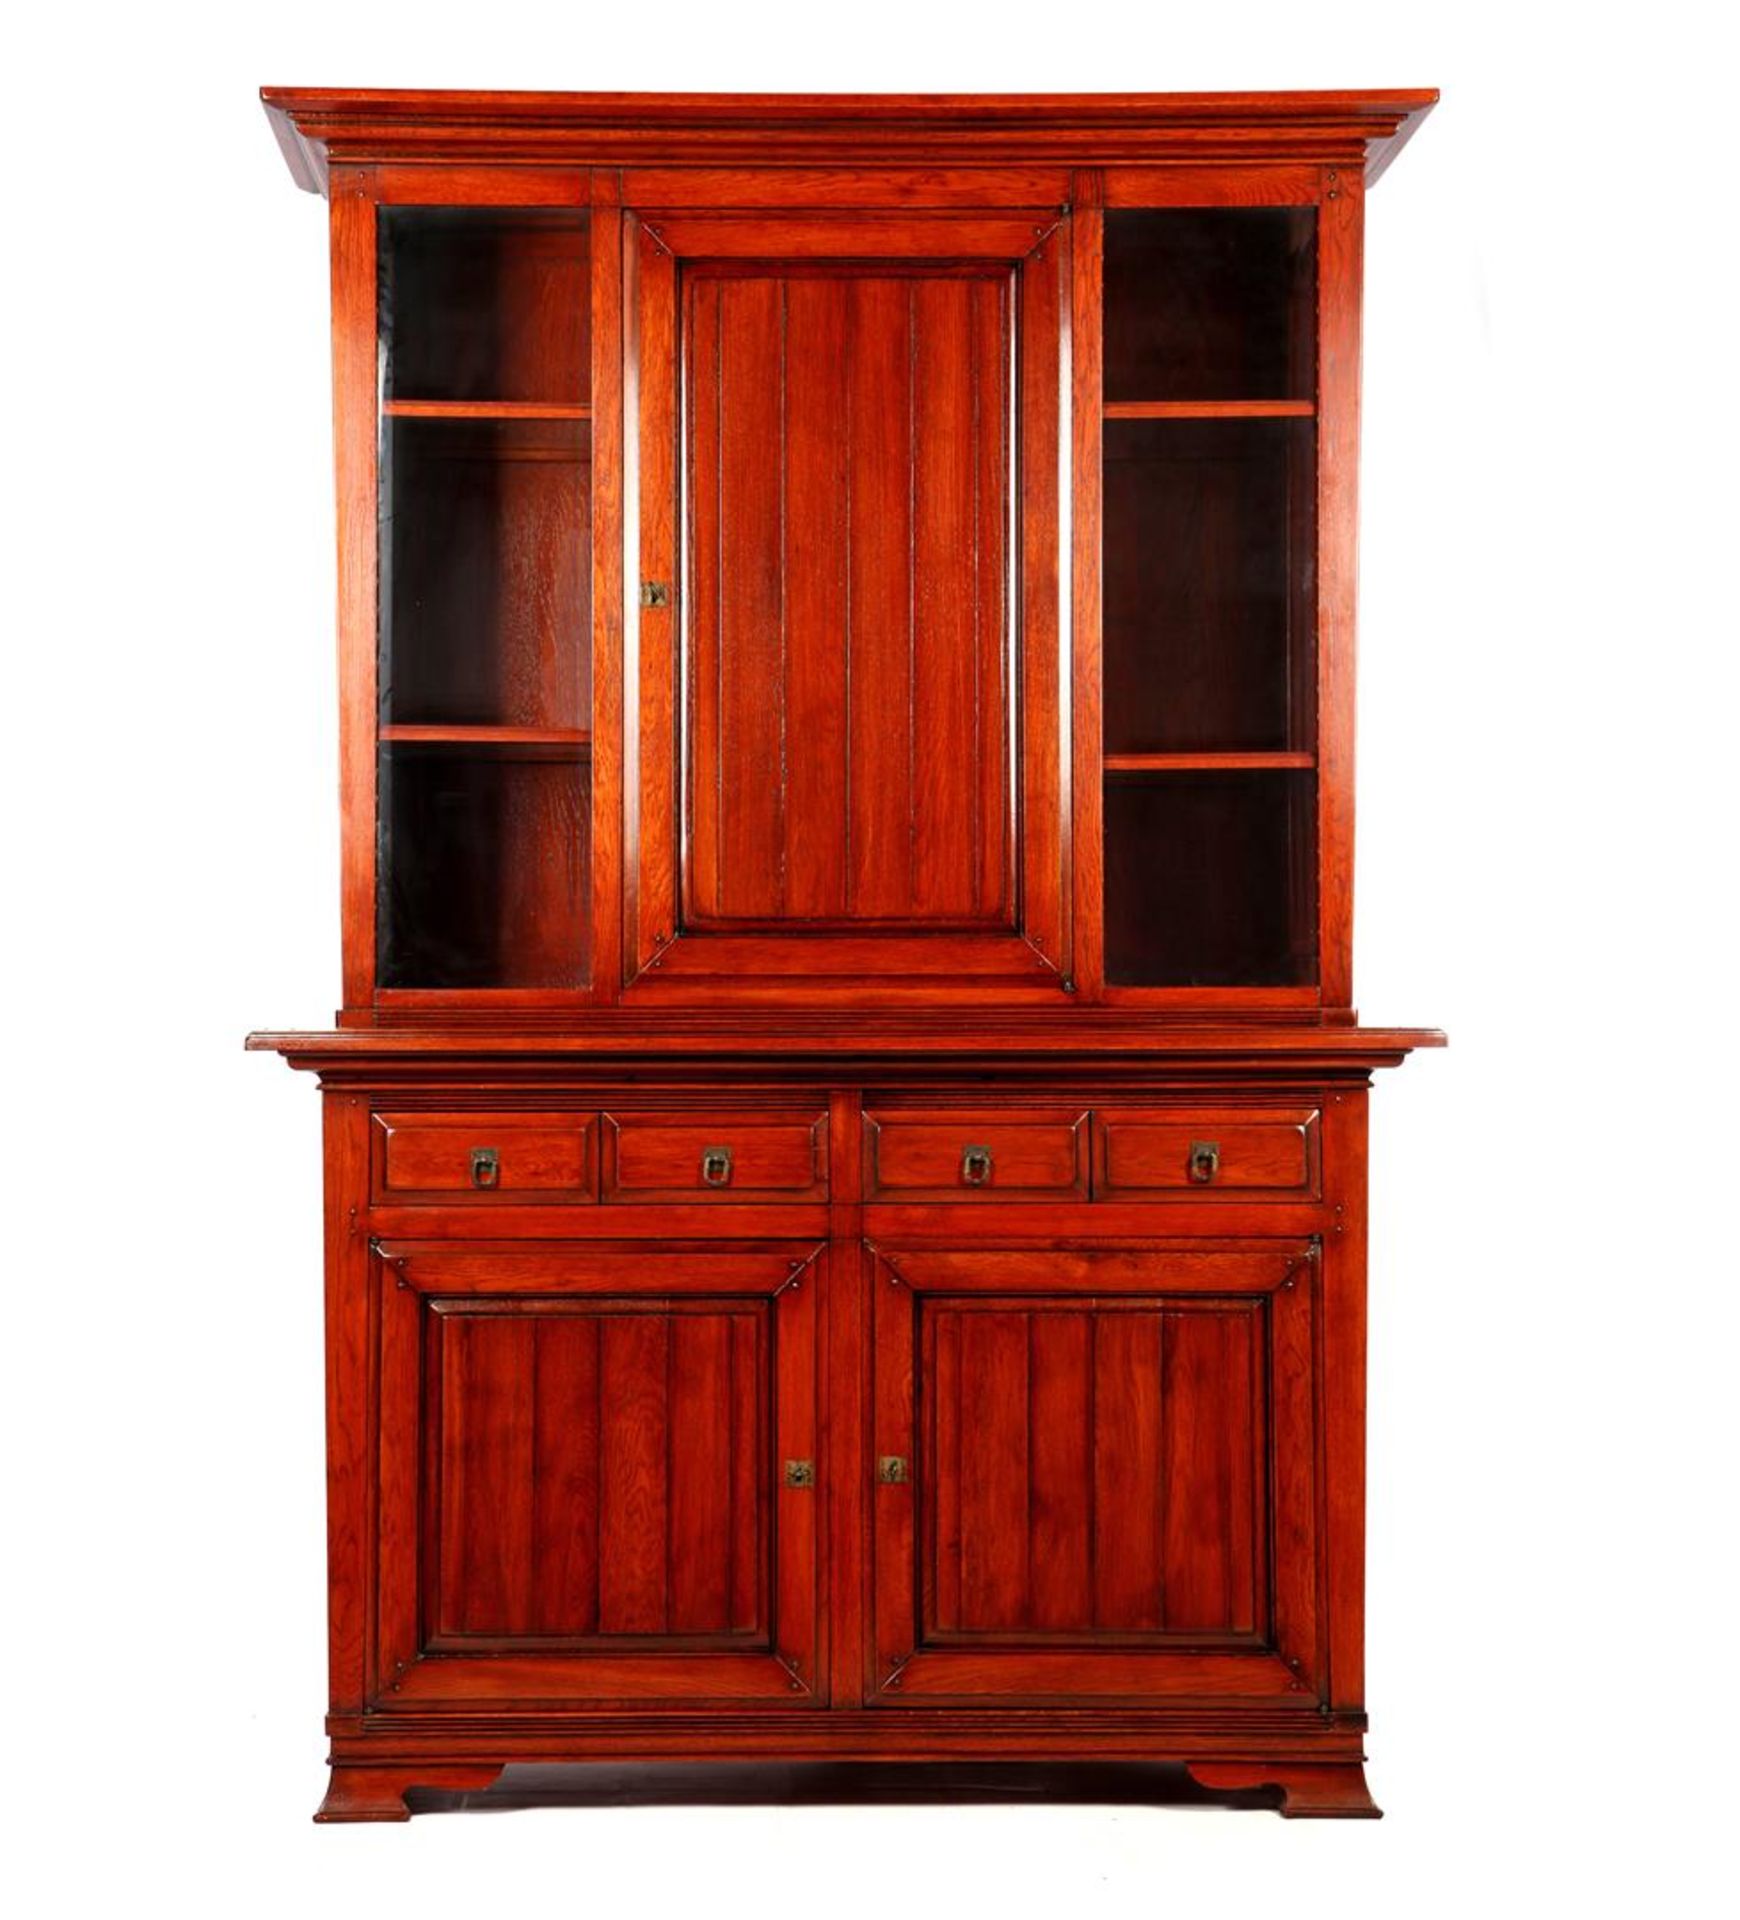 Oak cherry color 2-part cabinet